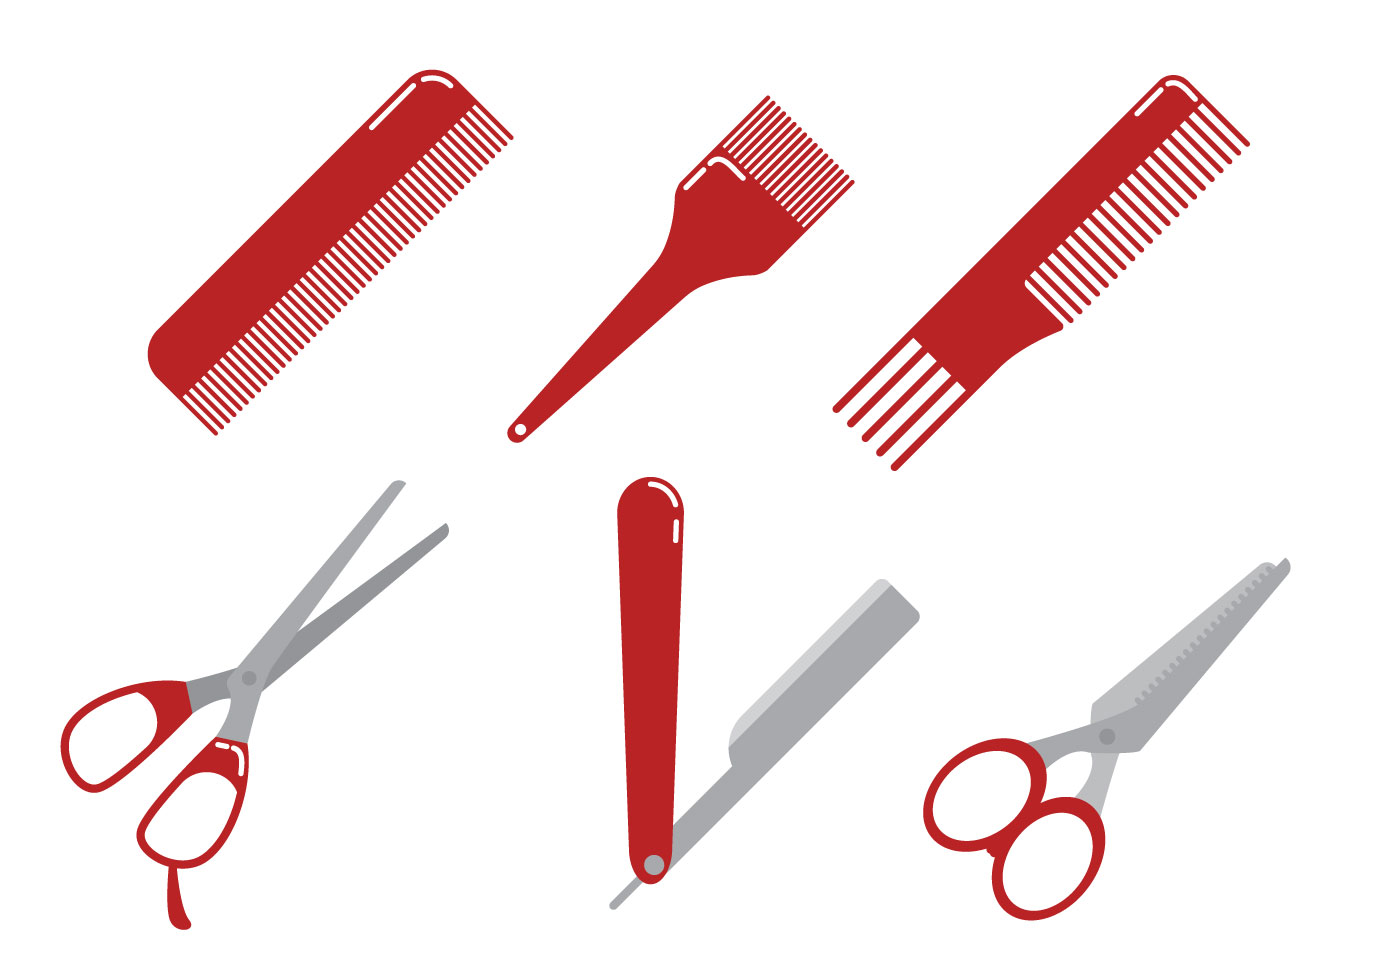 barber-tools-vector